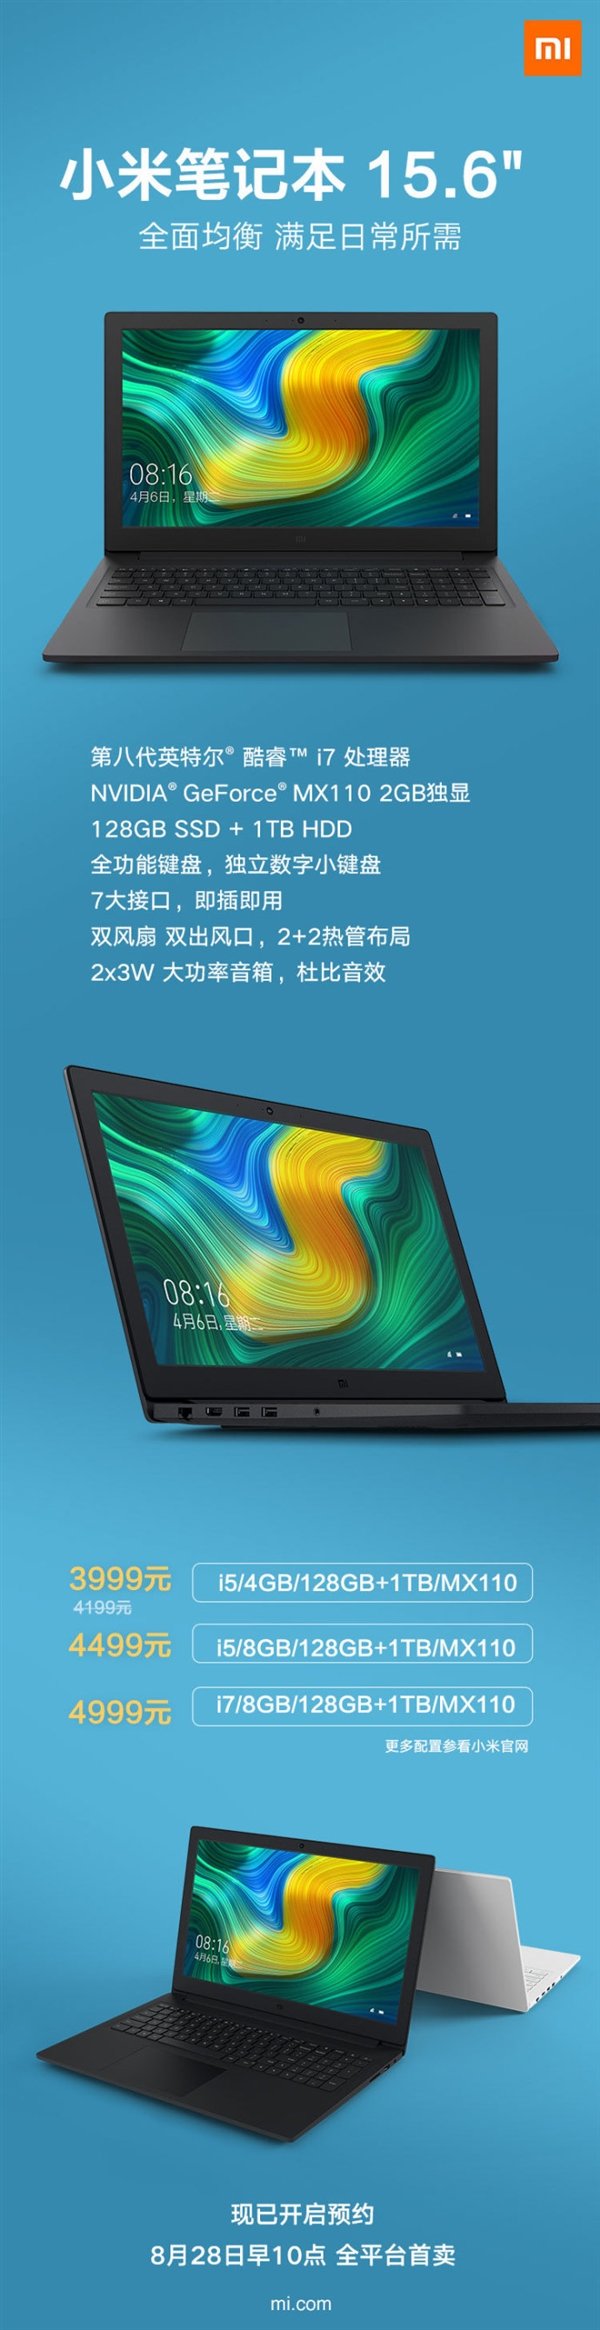 Xiaomi представила 15,6-дюймовый ноутбук с ценой от 580 долларов